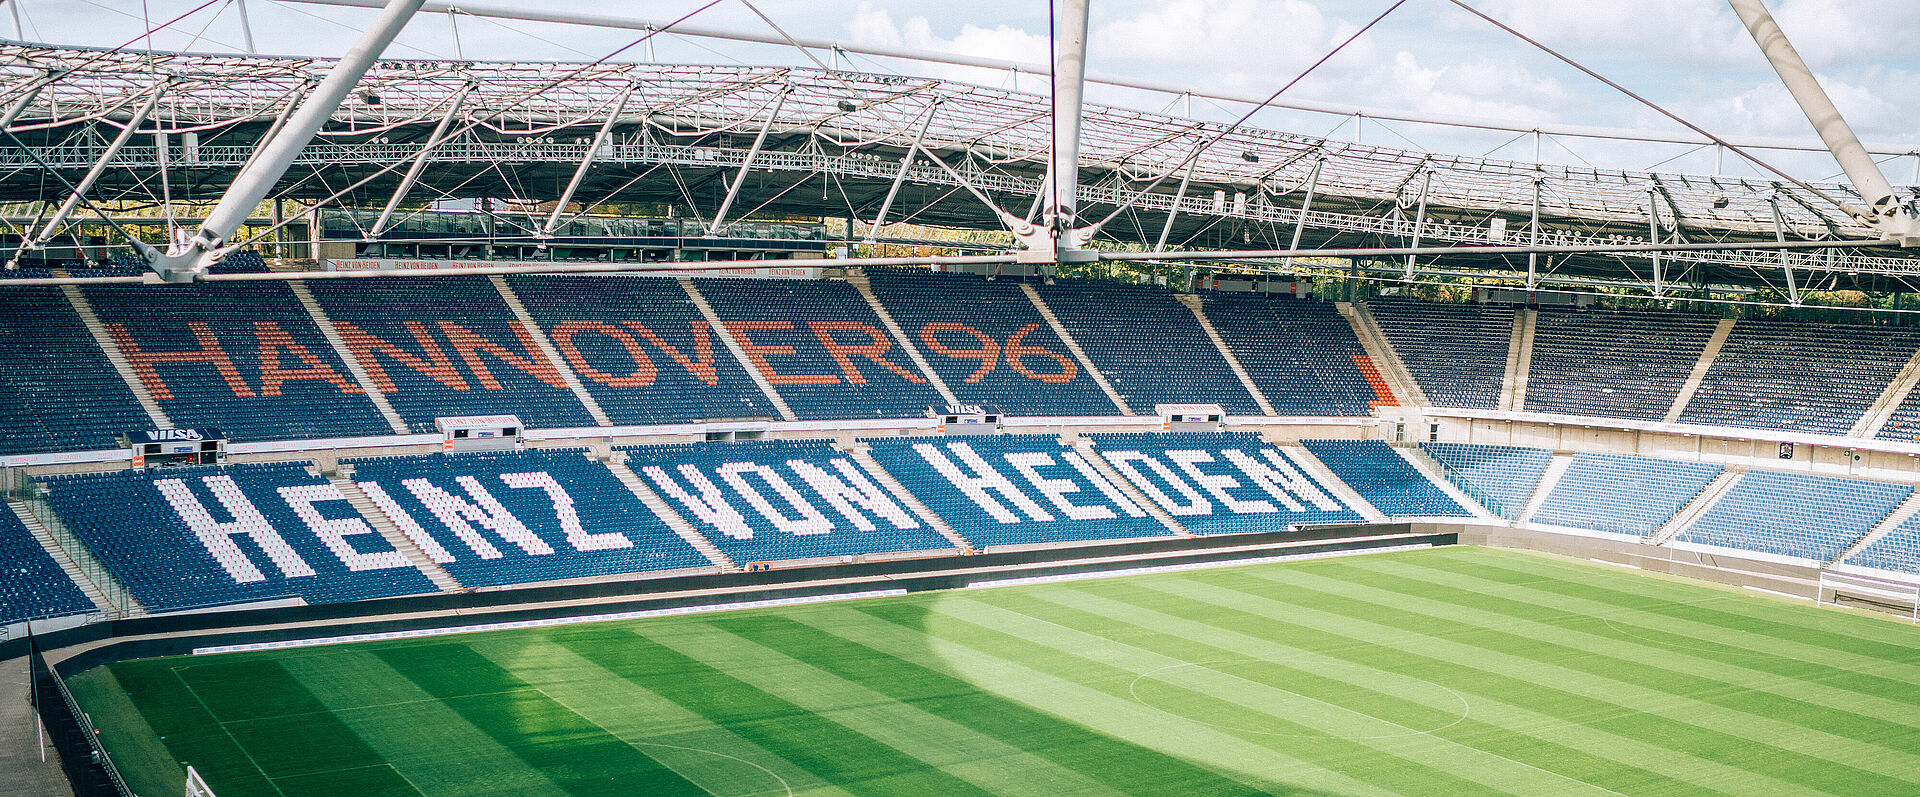 Der Innenraum des Heinz-von-Heiden-Stadions von Hannover 96 bei Sonnenschein.